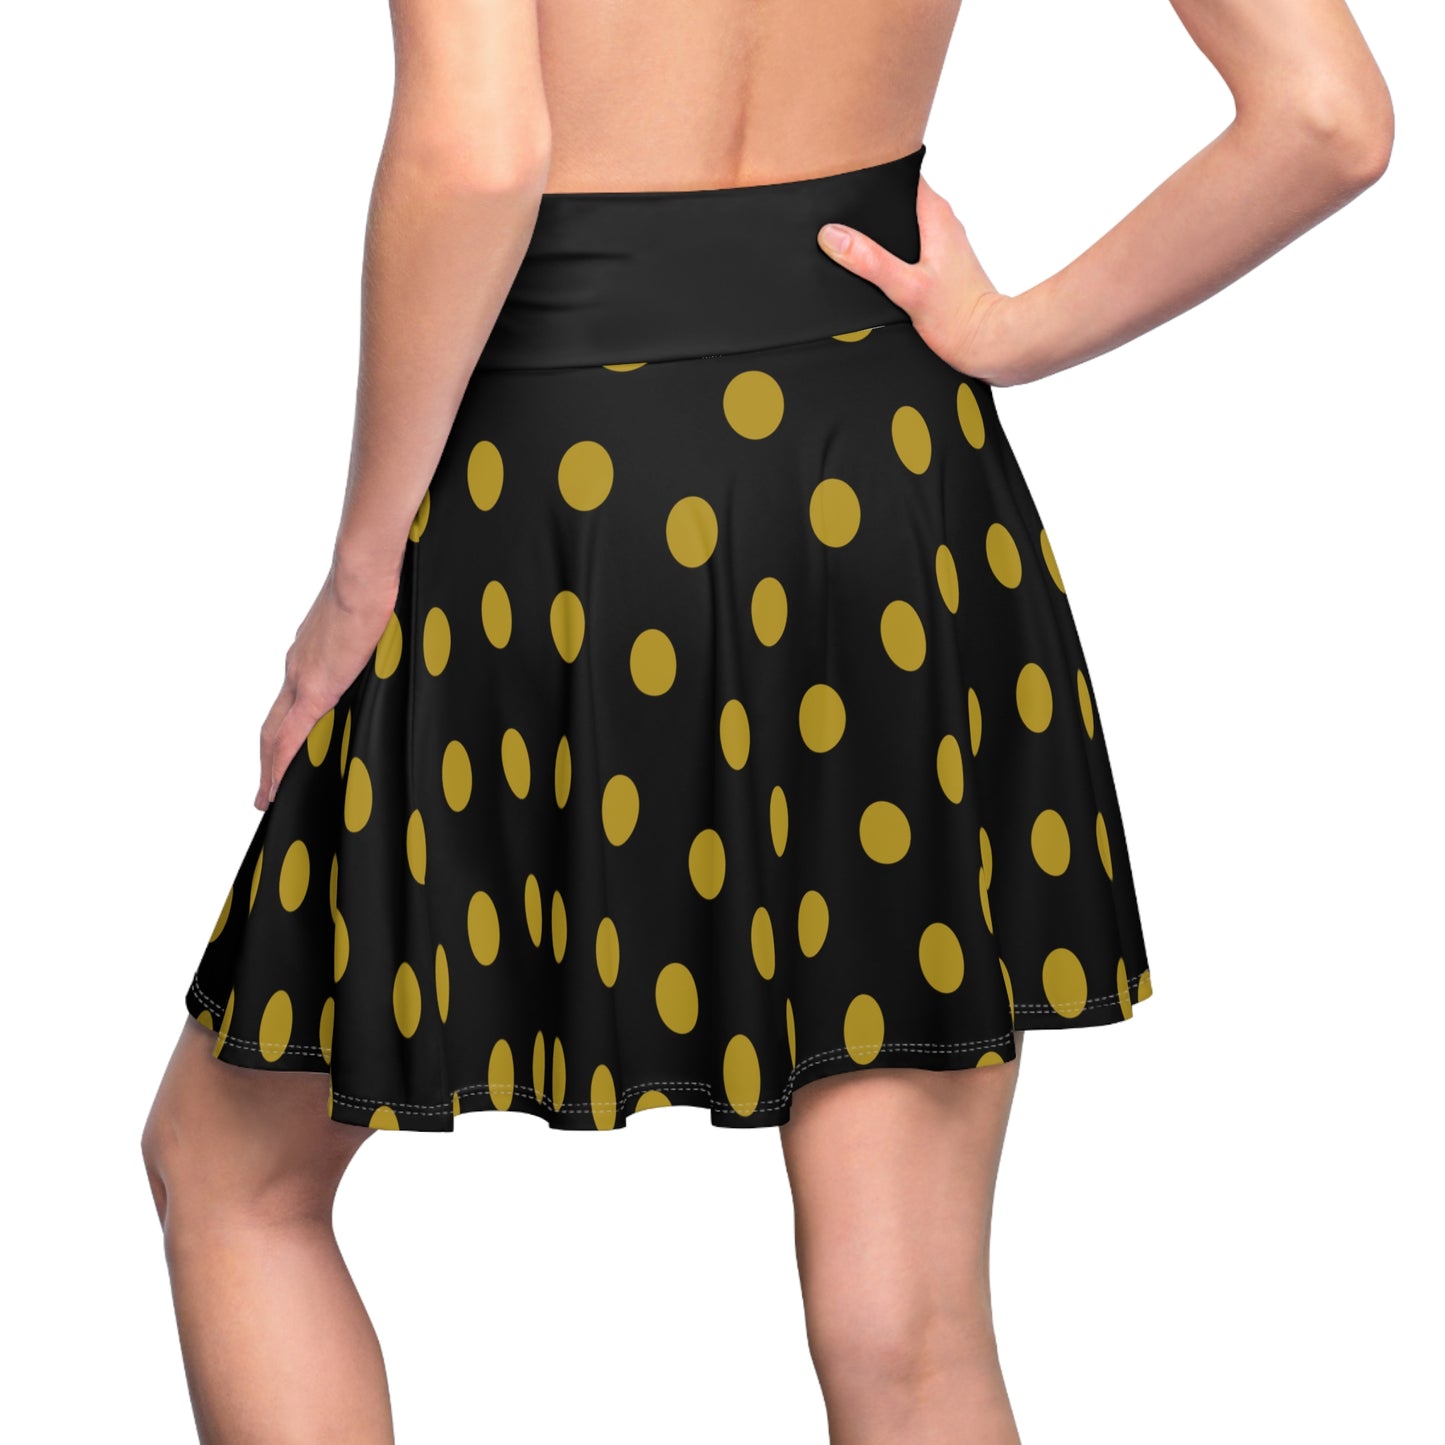 Black and Gold Polka Dot Women's Skater Skirt (AOP), Fashionable Skater Skirt